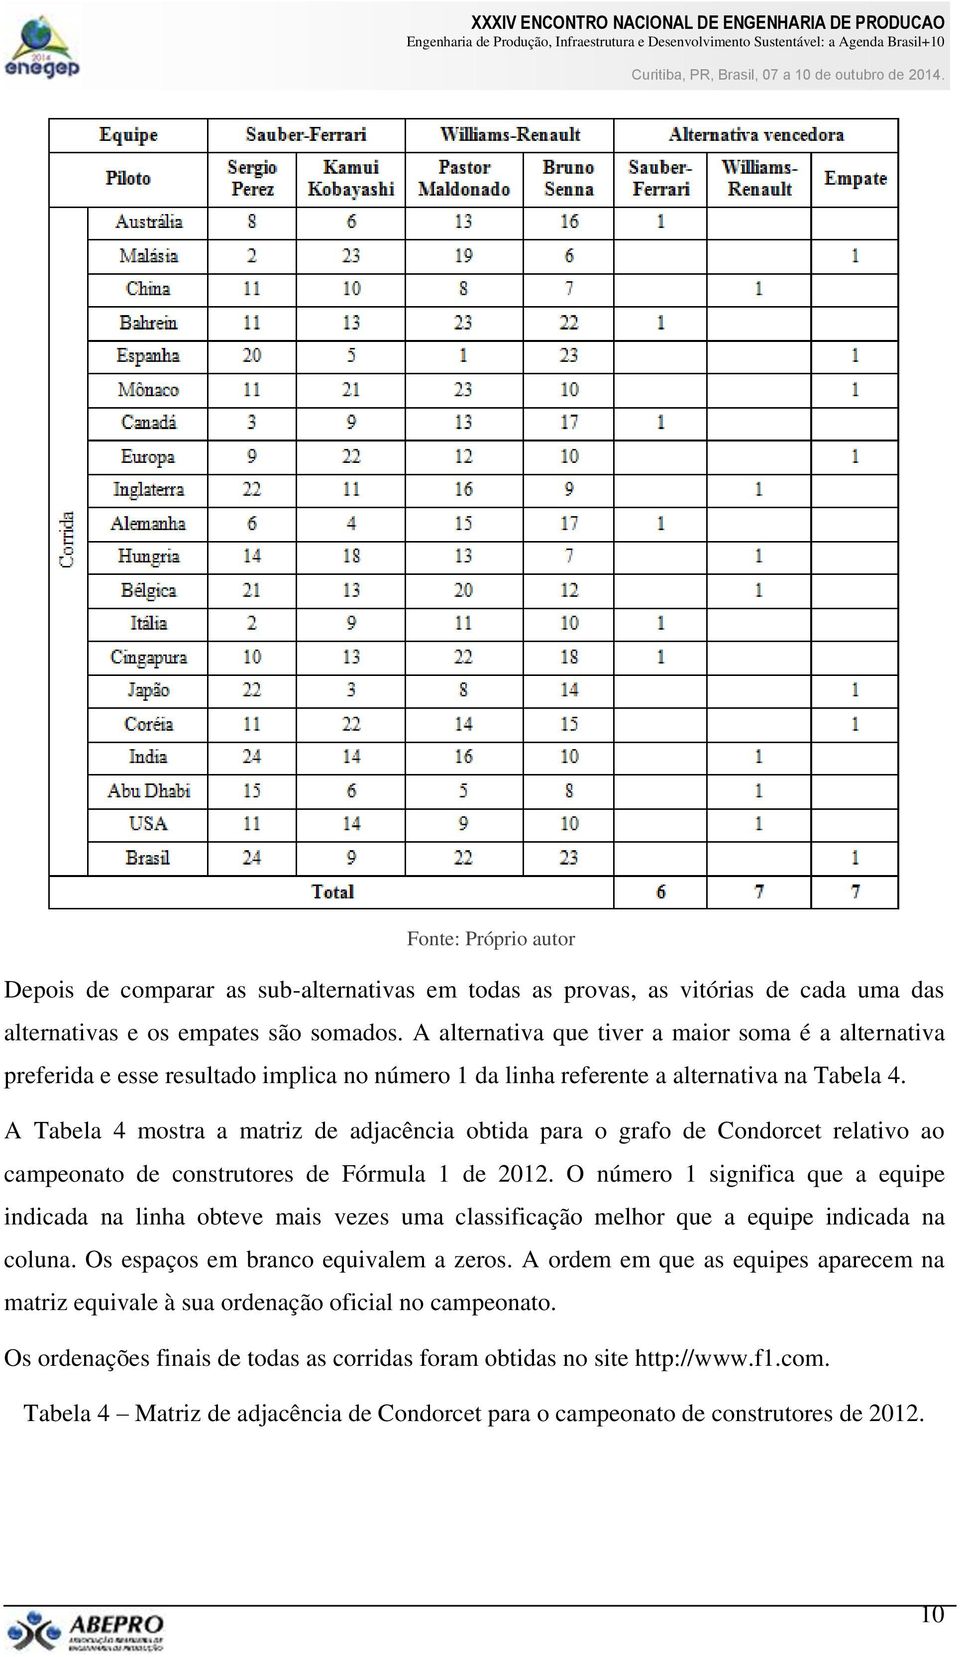 A Tabela 4 mostra a matriz de adjacência obtida para o grafo de Condorcet relativo ao campeonato de construtores de Fórmula 1 de 2012.